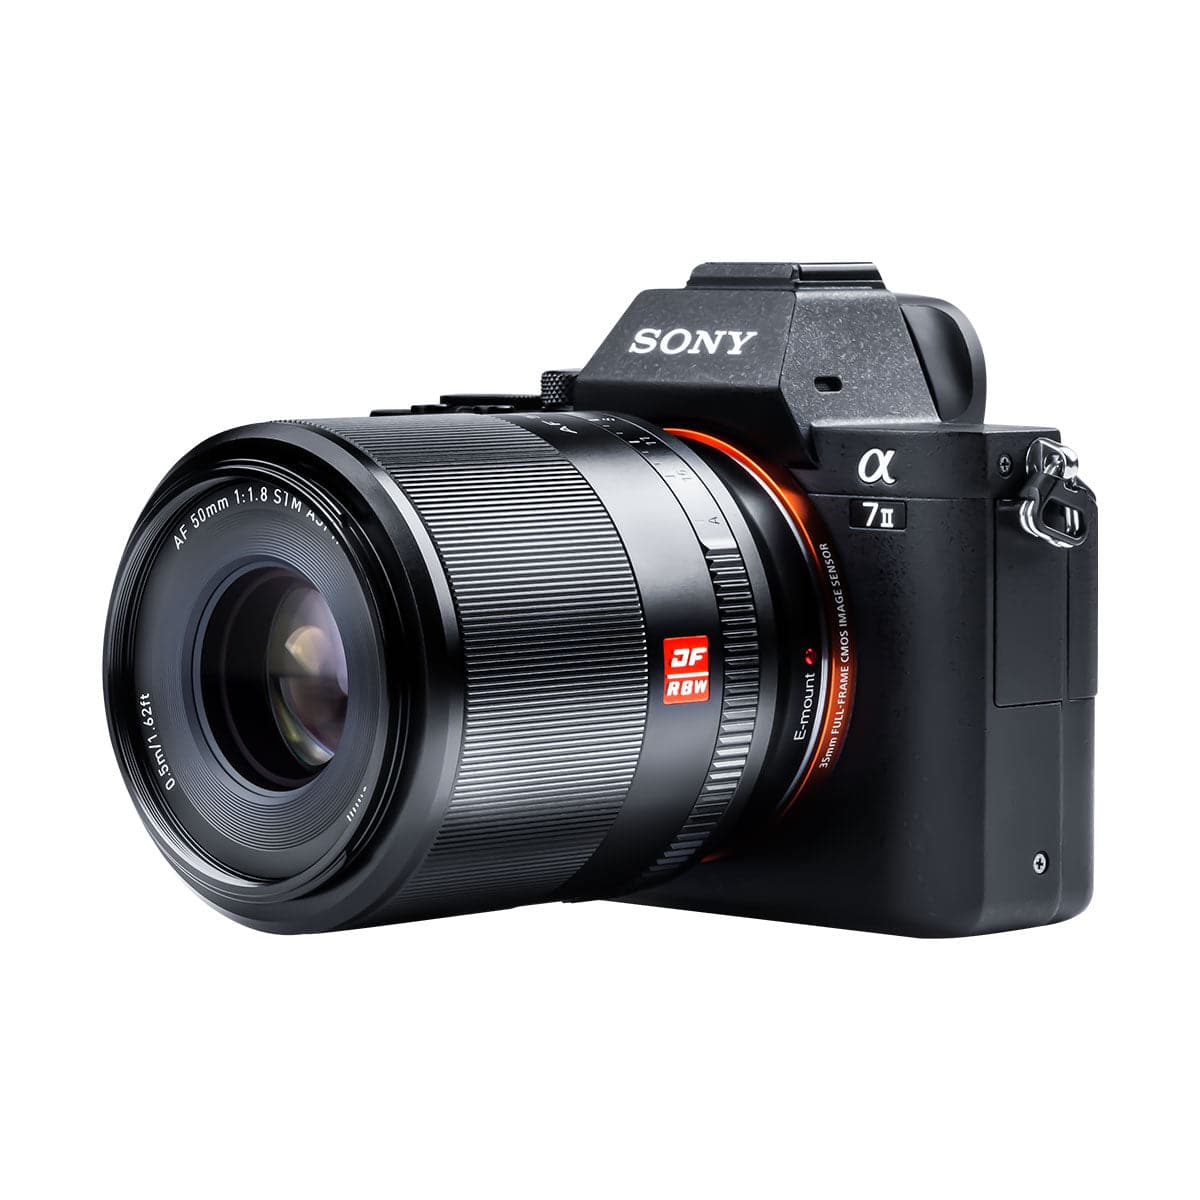 Viltrox AF 50mm F1.8 Full Frame Lens For Sony E-Mount